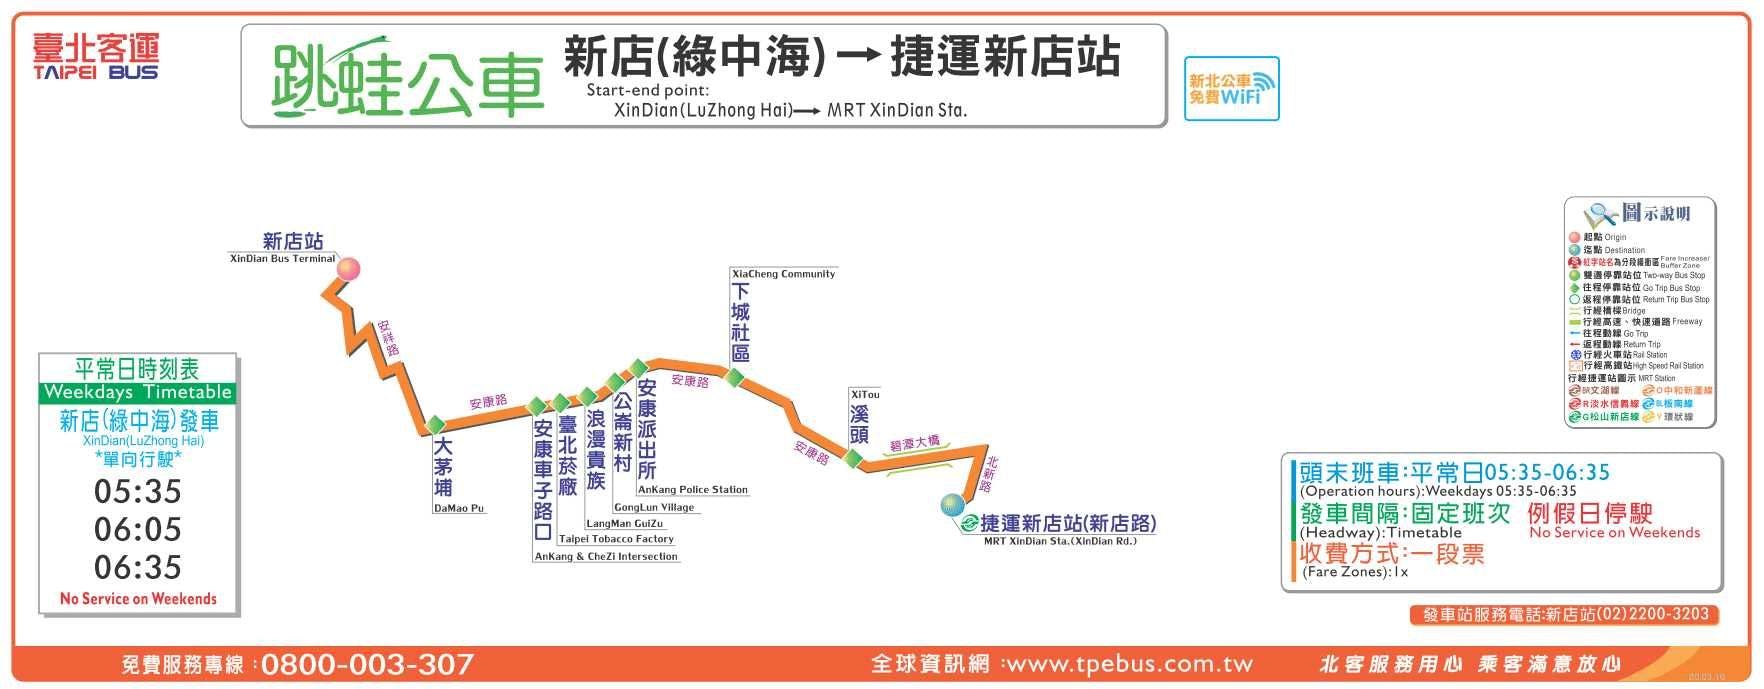 Green Villa-MRT Xindian stnRoute Map-新北市 Bus